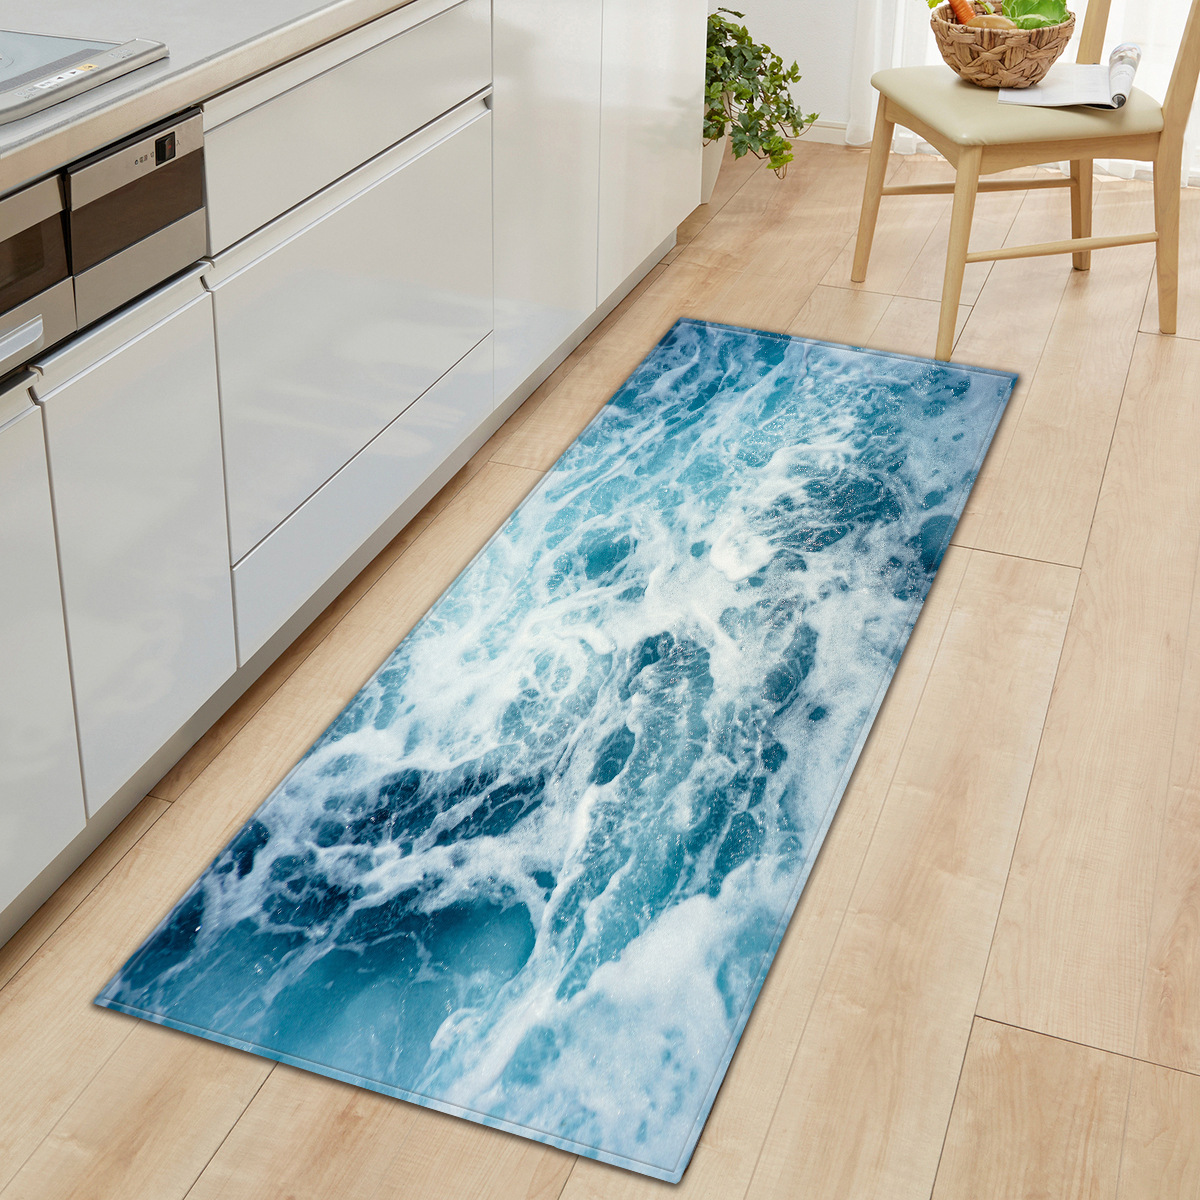 Surfboard Standing on Beach Ocean Non Slip Flannel Rug Carpet Bathroom Door Mat 